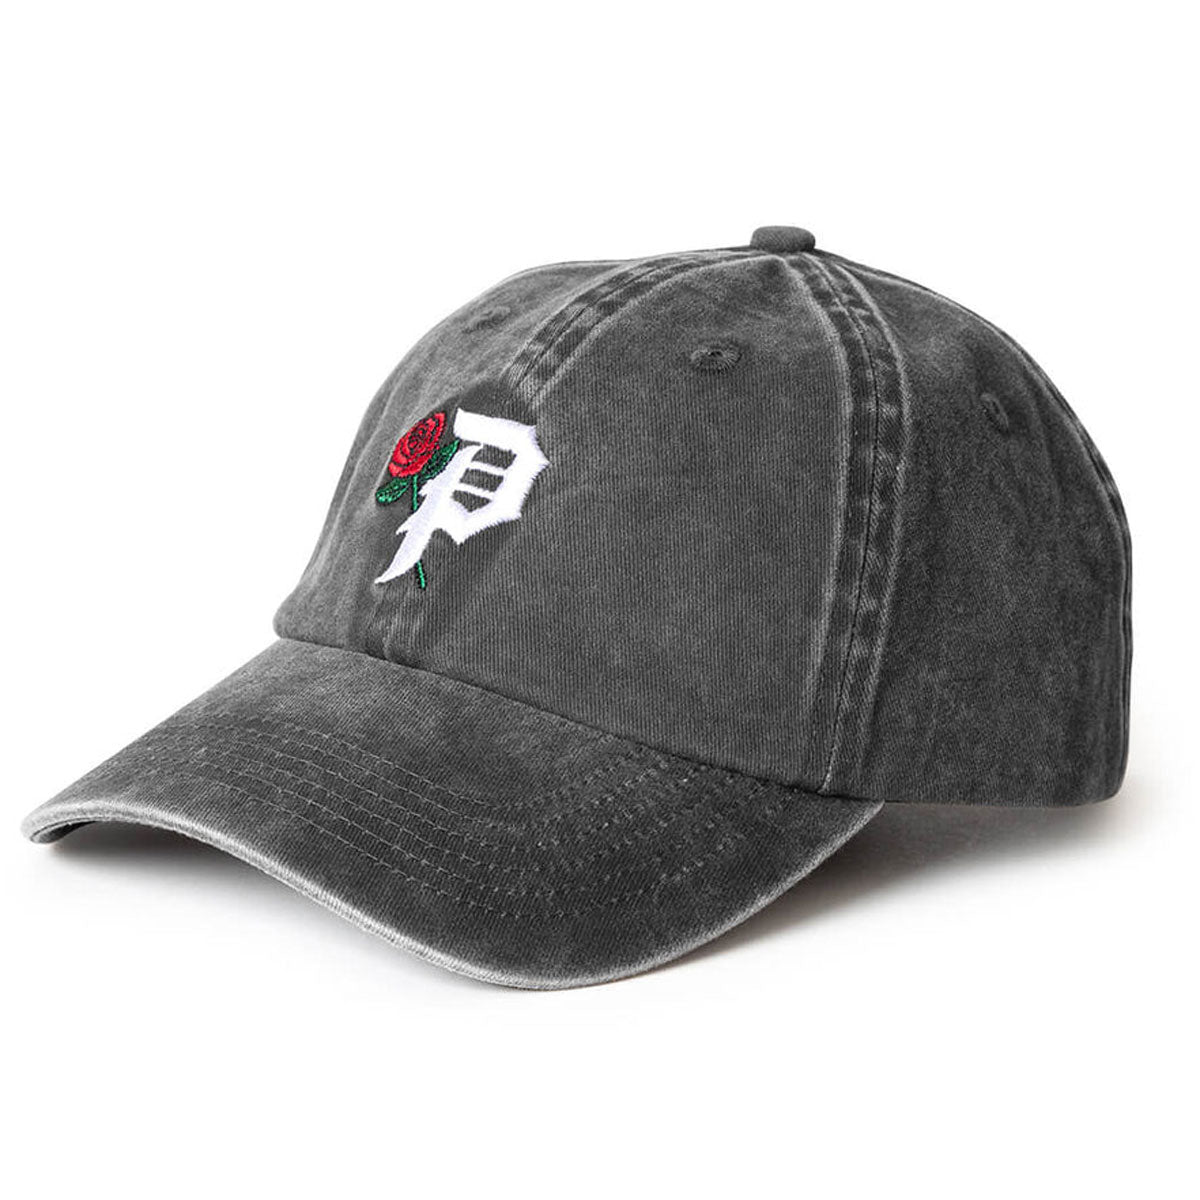 Primitive Rosey Over-dyed Strapback Hat - Black image 1